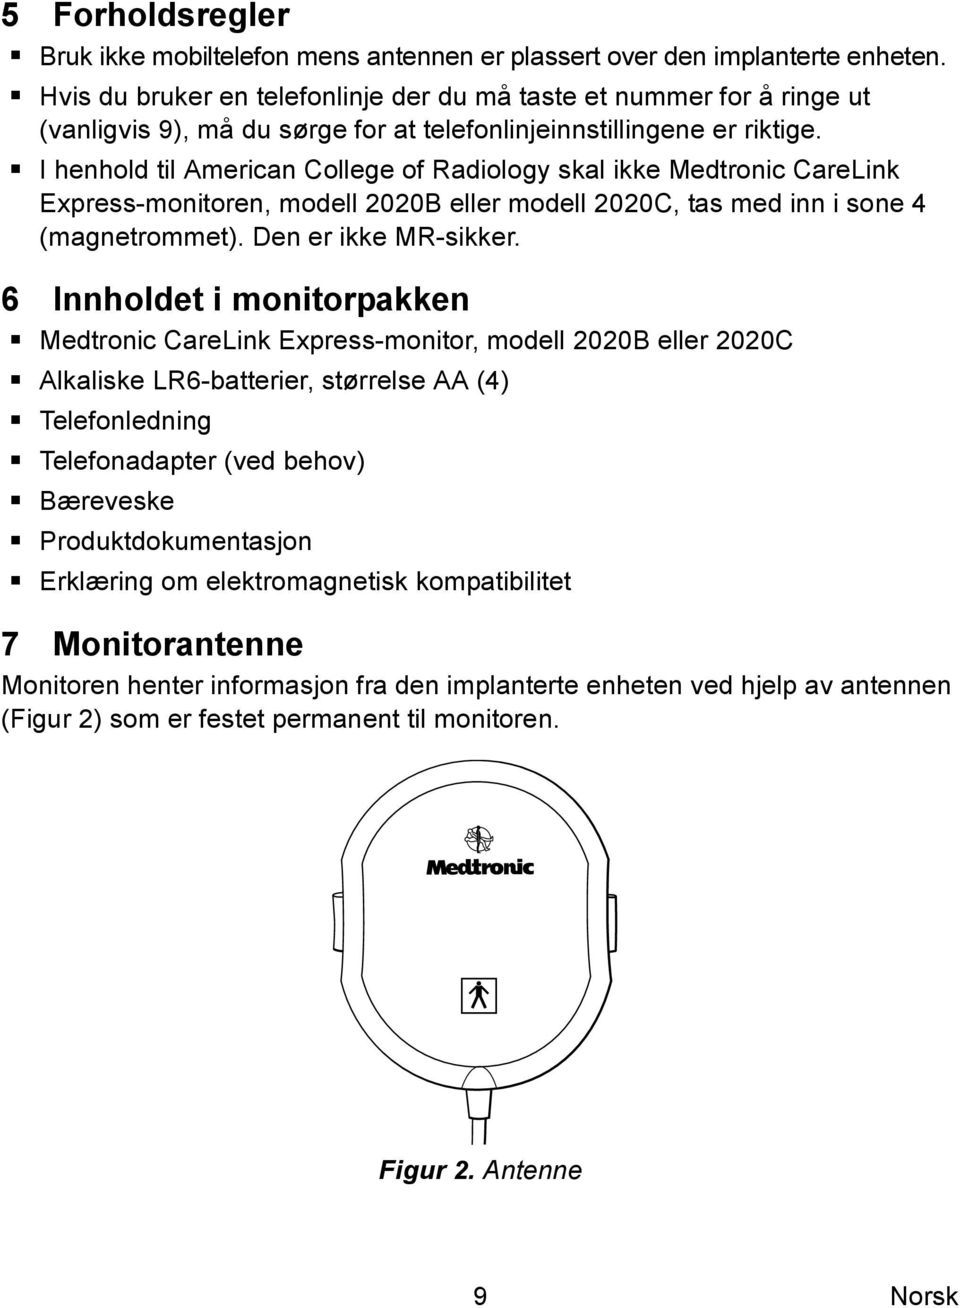 I henhold til American College of Radiology skal ikke Medtronic CareLink Express-monitoren, modell 2020B eller modell 2020C, tas med inn i sone 4 (magnetrommet). Den er ikke MR-sikker.